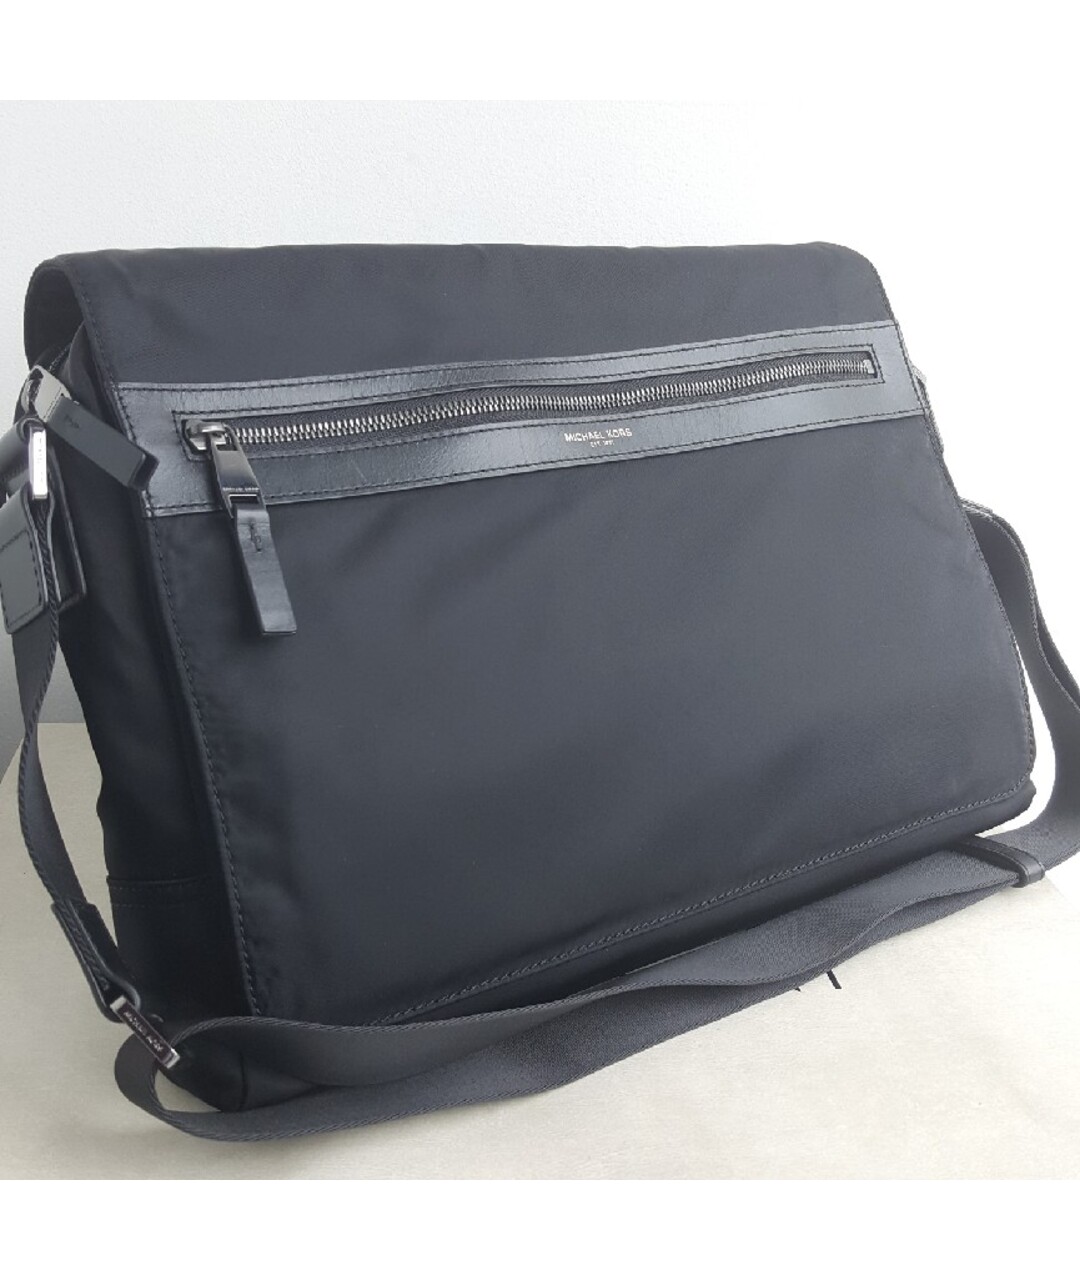 MICHAEL KORS Черная тканевая сумка на плечо, фото 2